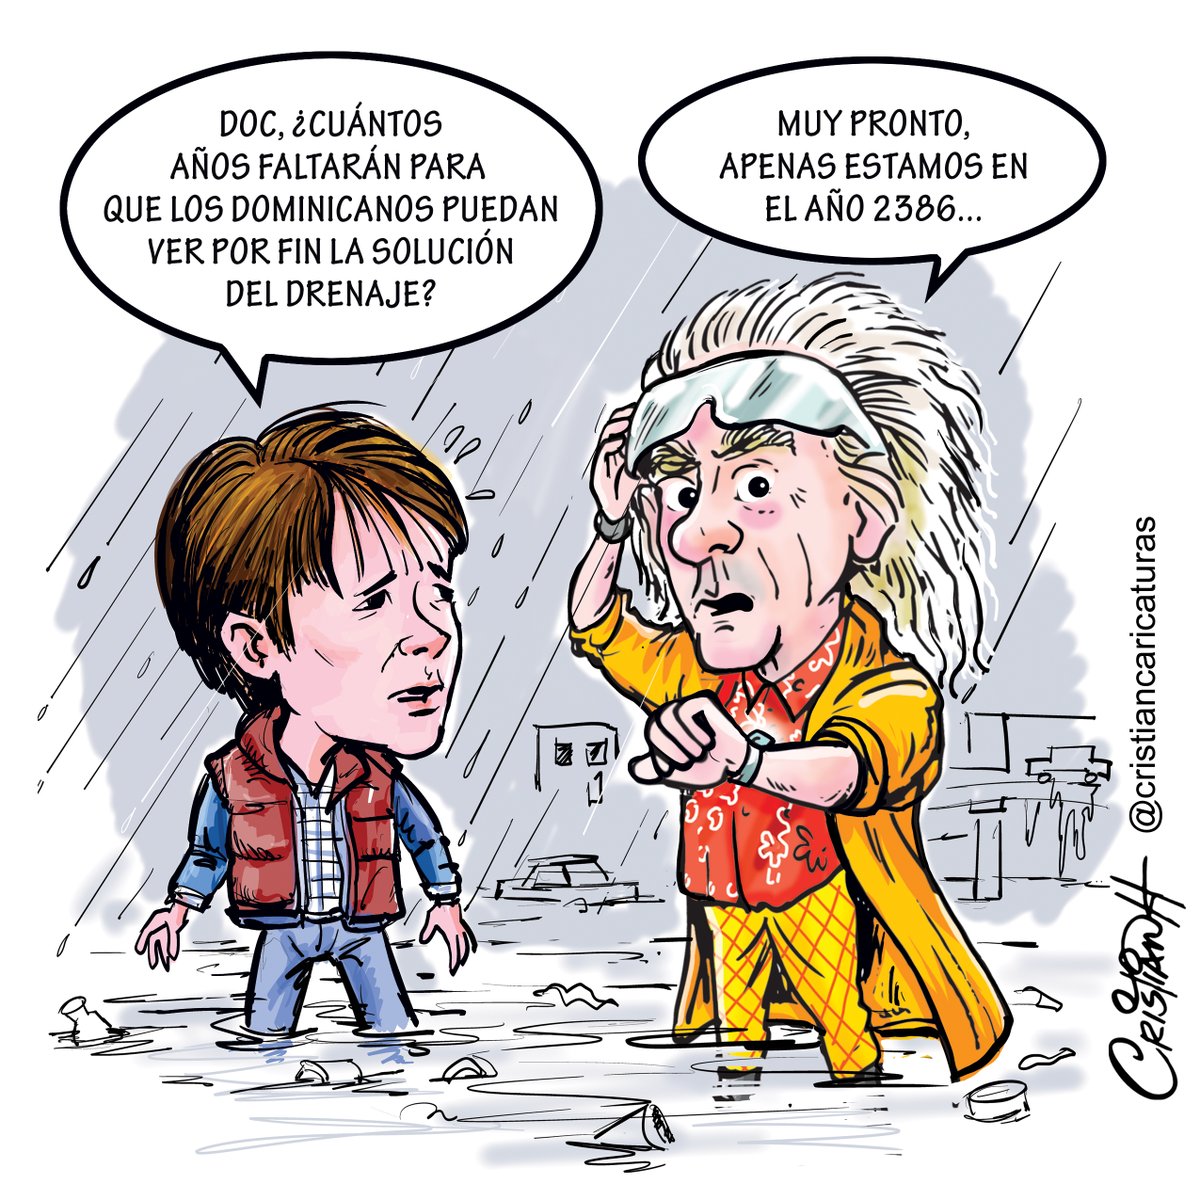 'No desesperéis', ya falta poco para tener un drenaje pluvial... ¡Cuando llueva pa'rriba!

Mi caricatura del jueves 9 de mayo en el periódico @ElDia_do

.

.

.

.

#DrenajePluvial #VolverAlFuturo #inundaciones #charcos #criscaricaturas